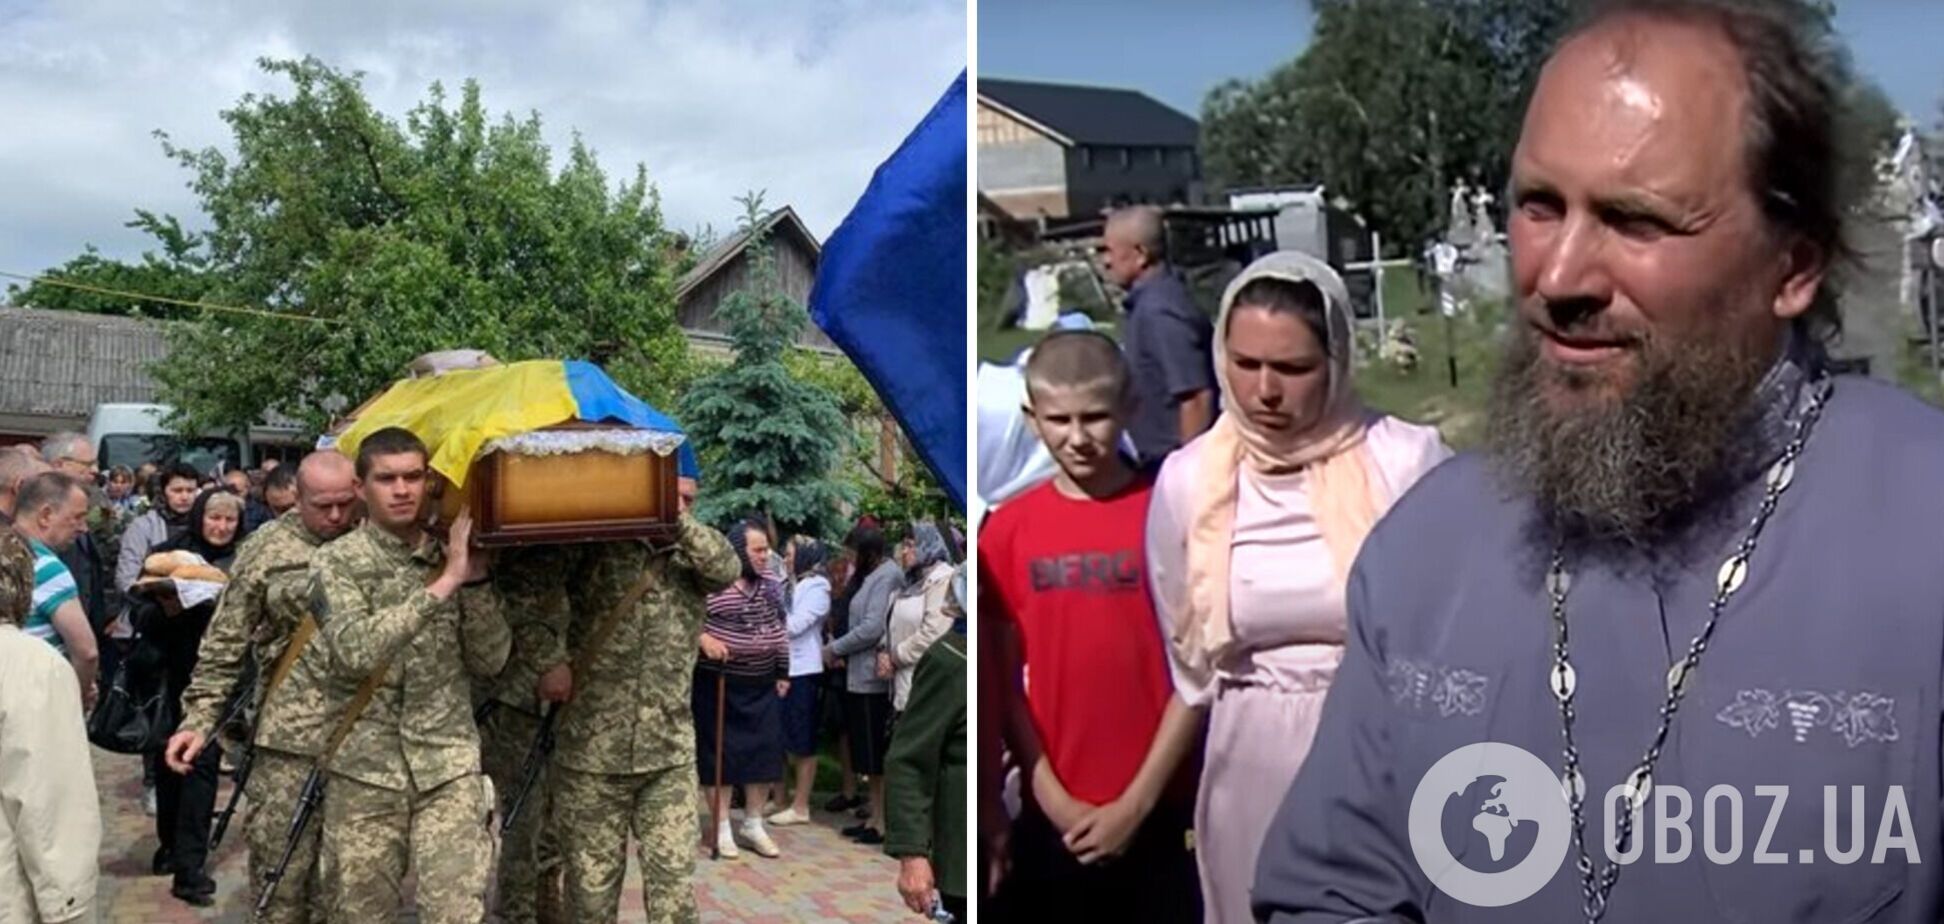 В Ривненской области священник УПЦ МП обвиняет семьи погибших в их смертях и продвигает российскую пропаганду